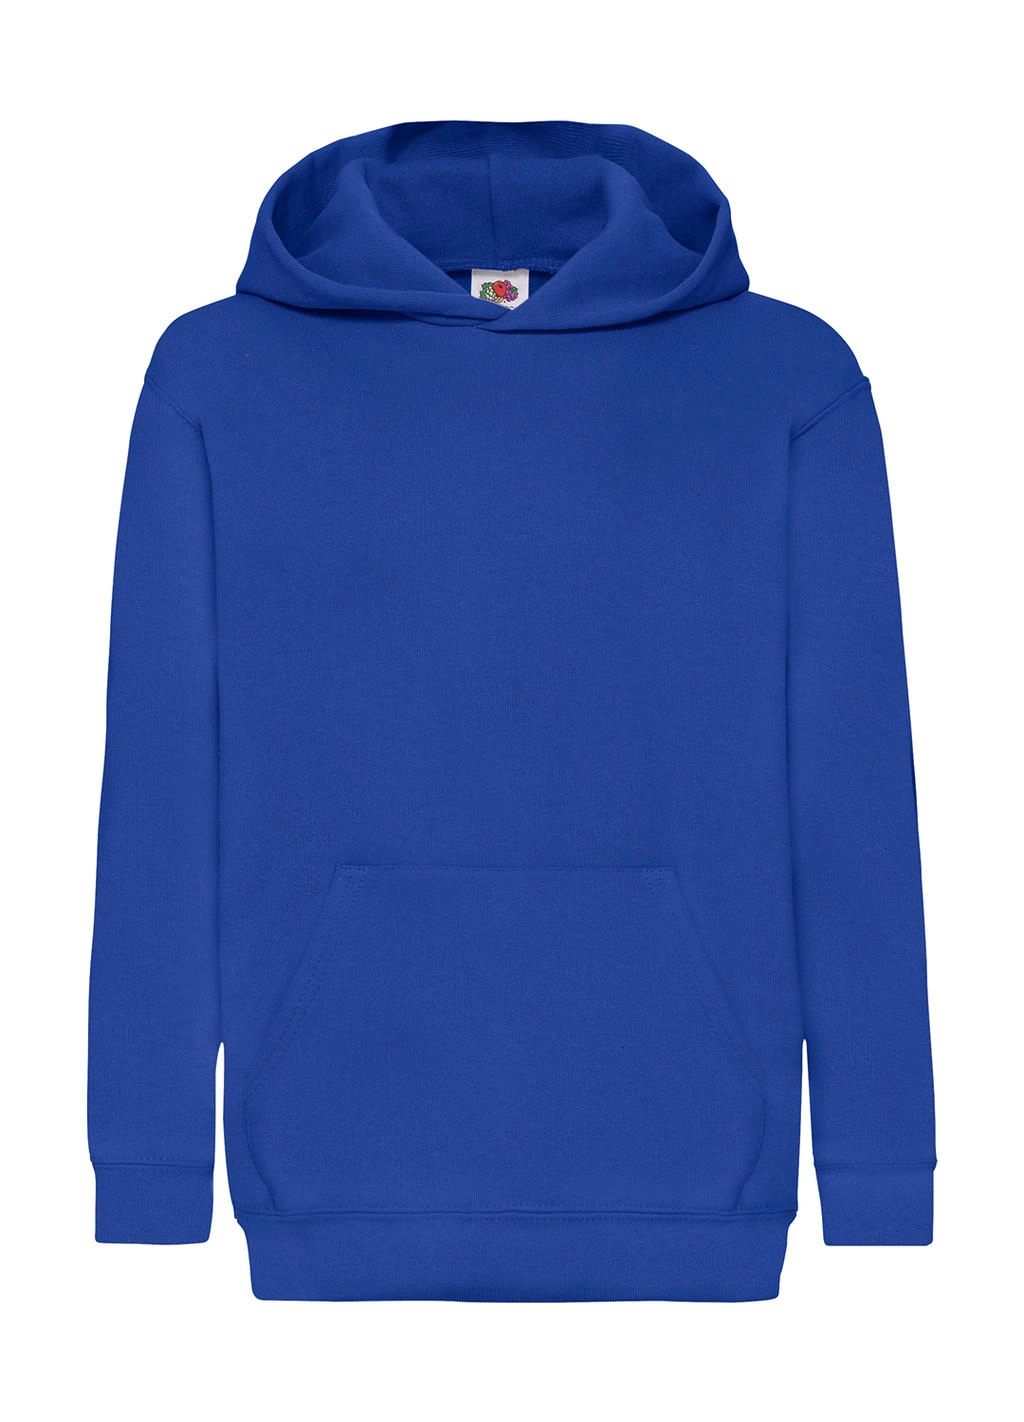 Kids` Classic Hooded Sweat zum Besticken und Bedrucken in der Farbe Royal Blue mit Ihren Logo, Schriftzug oder Motiv.